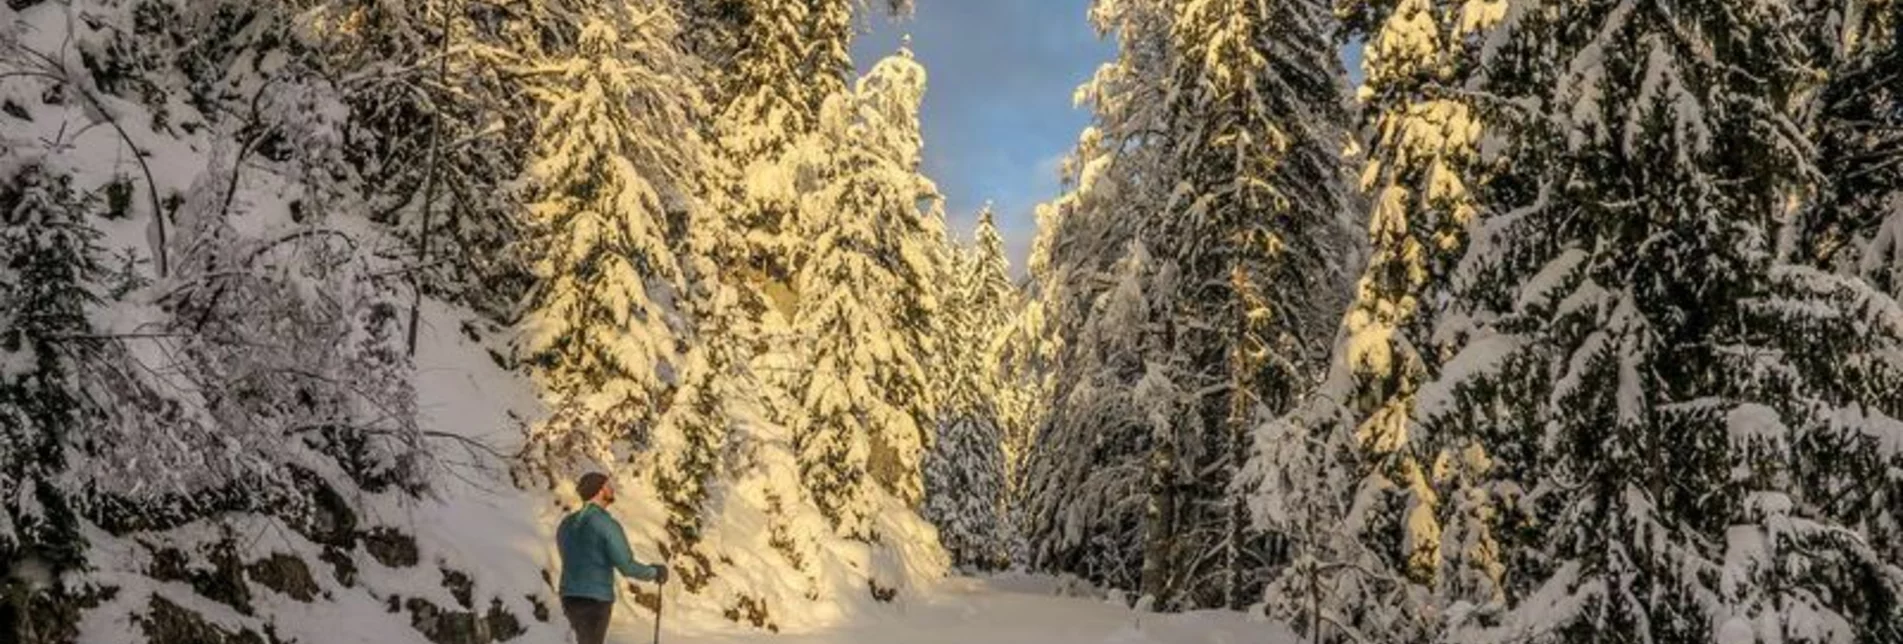 Schneeschuh Johnbacher Almenrunde mit Schneeschuhen - Touren-Impression #1 | © TV Gesäuse